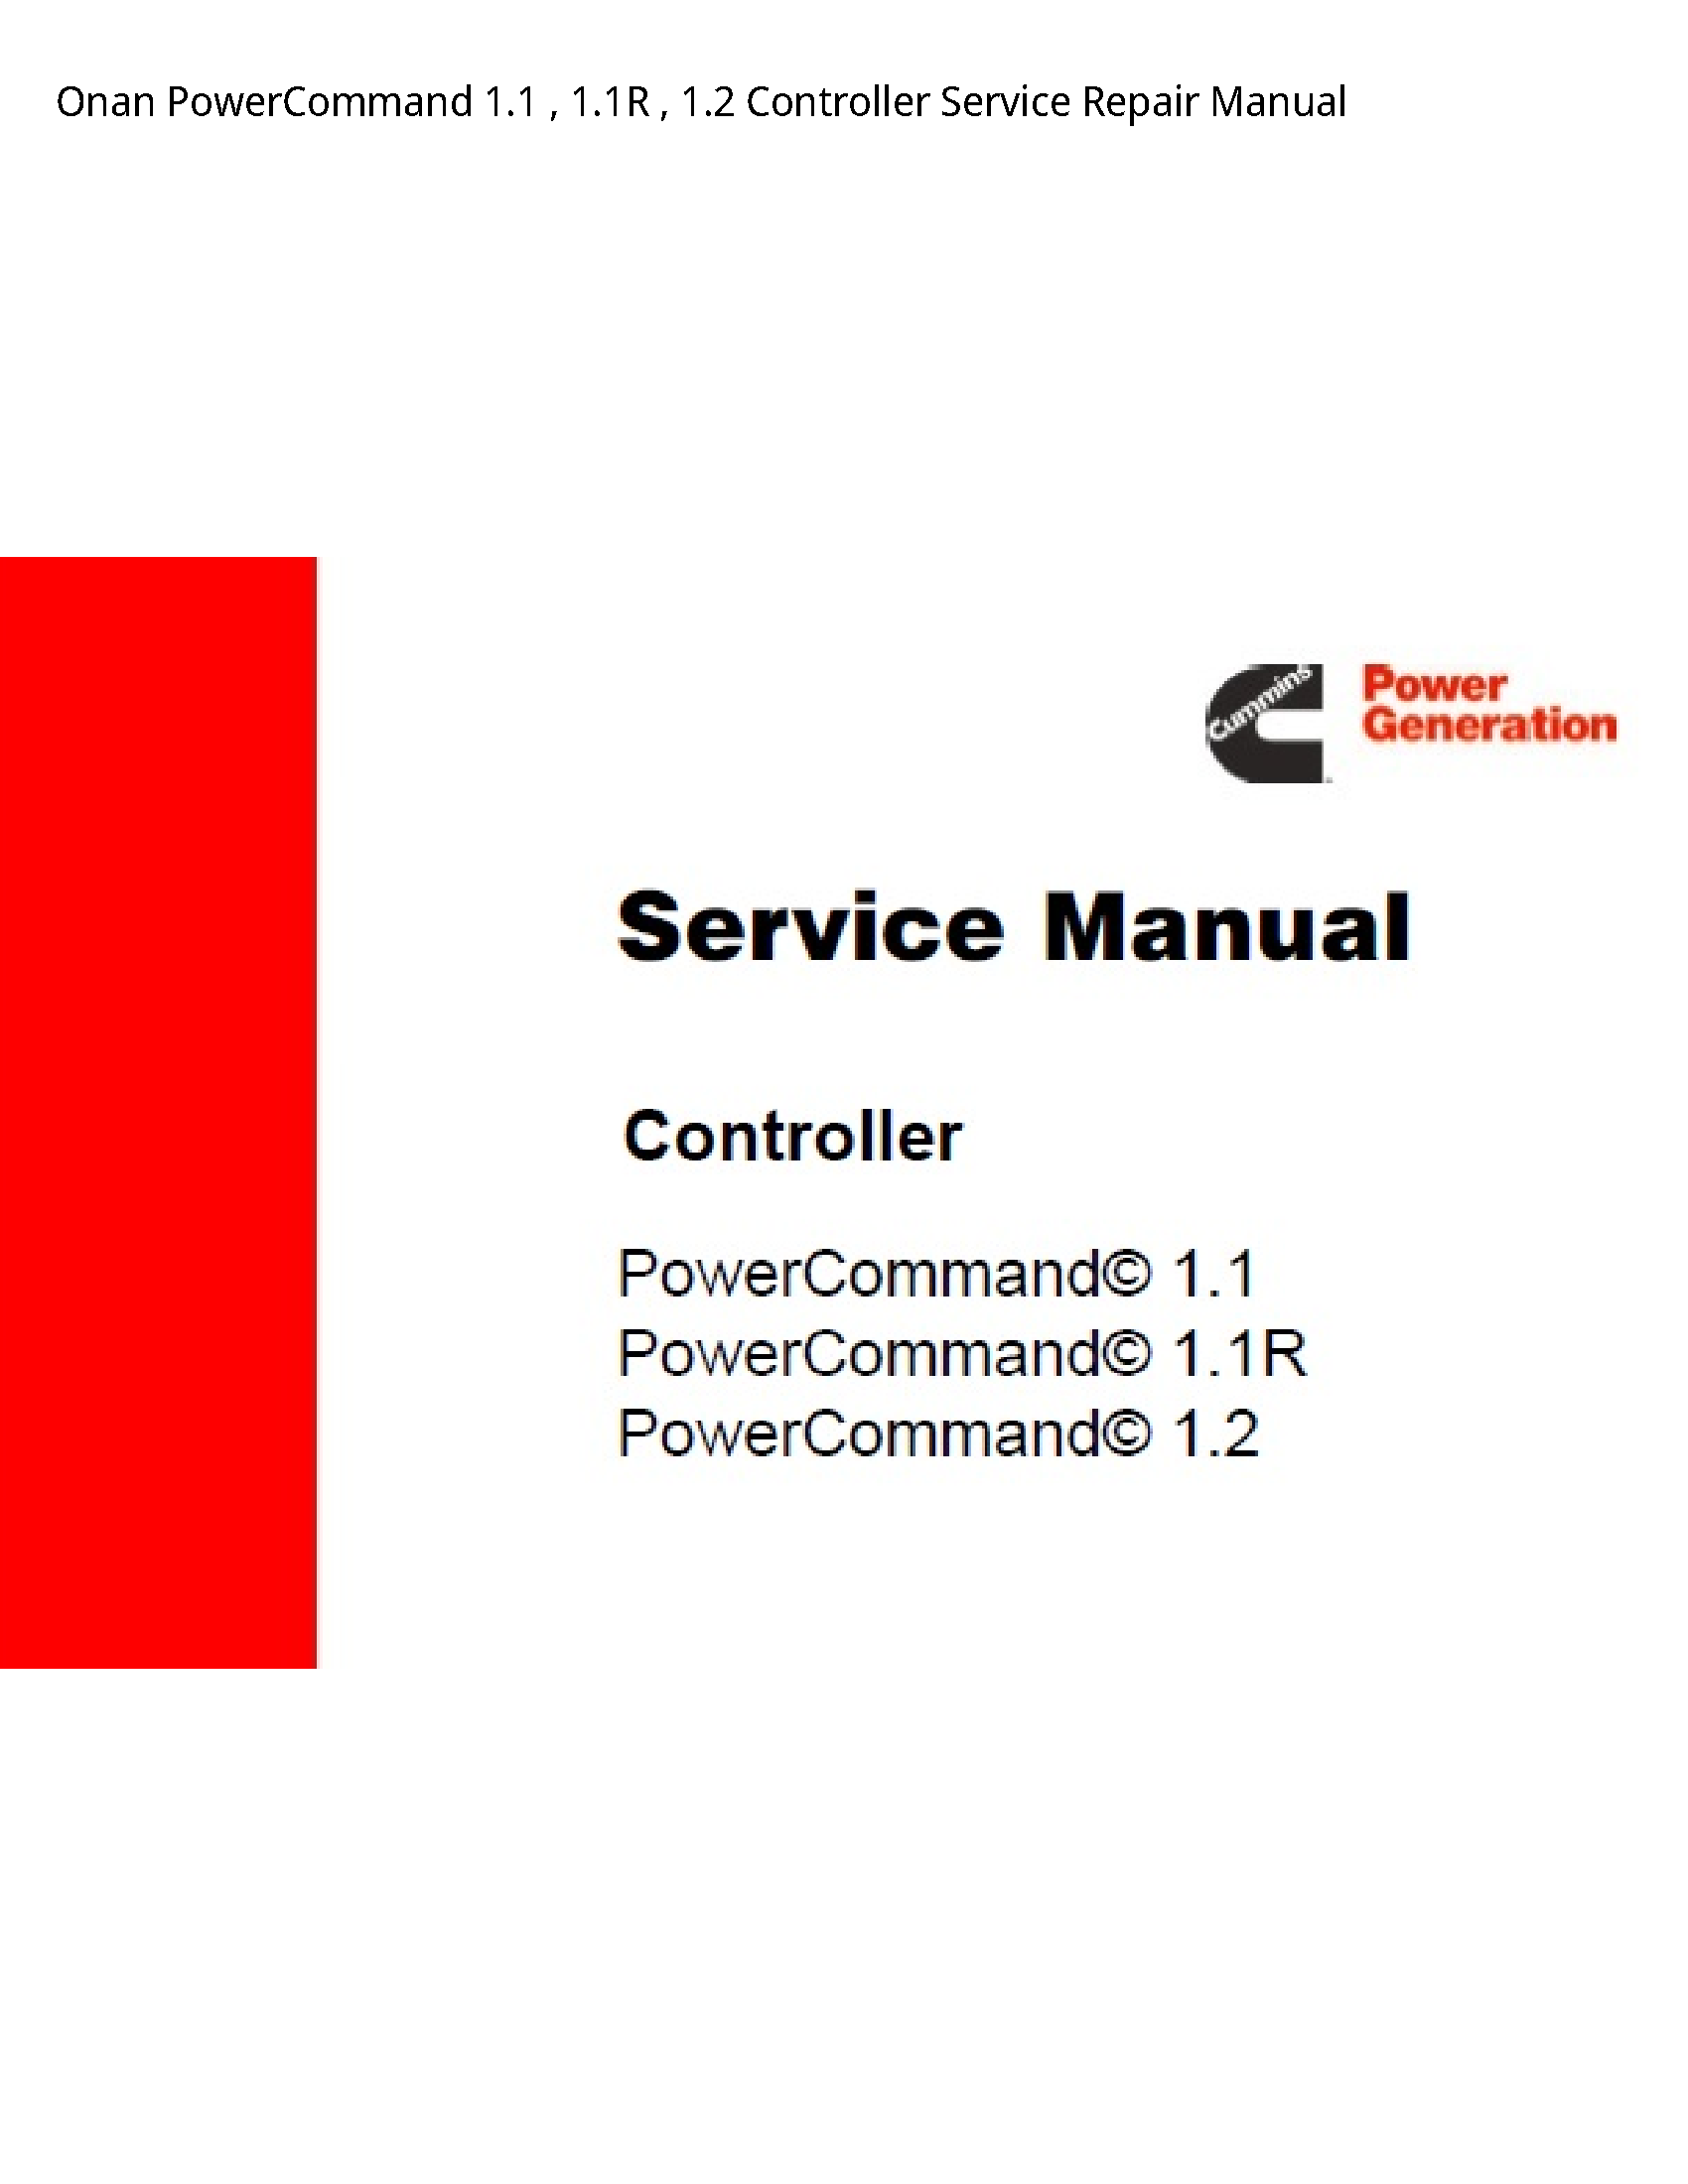 Onan 1.1 PowerCommand Controller manual